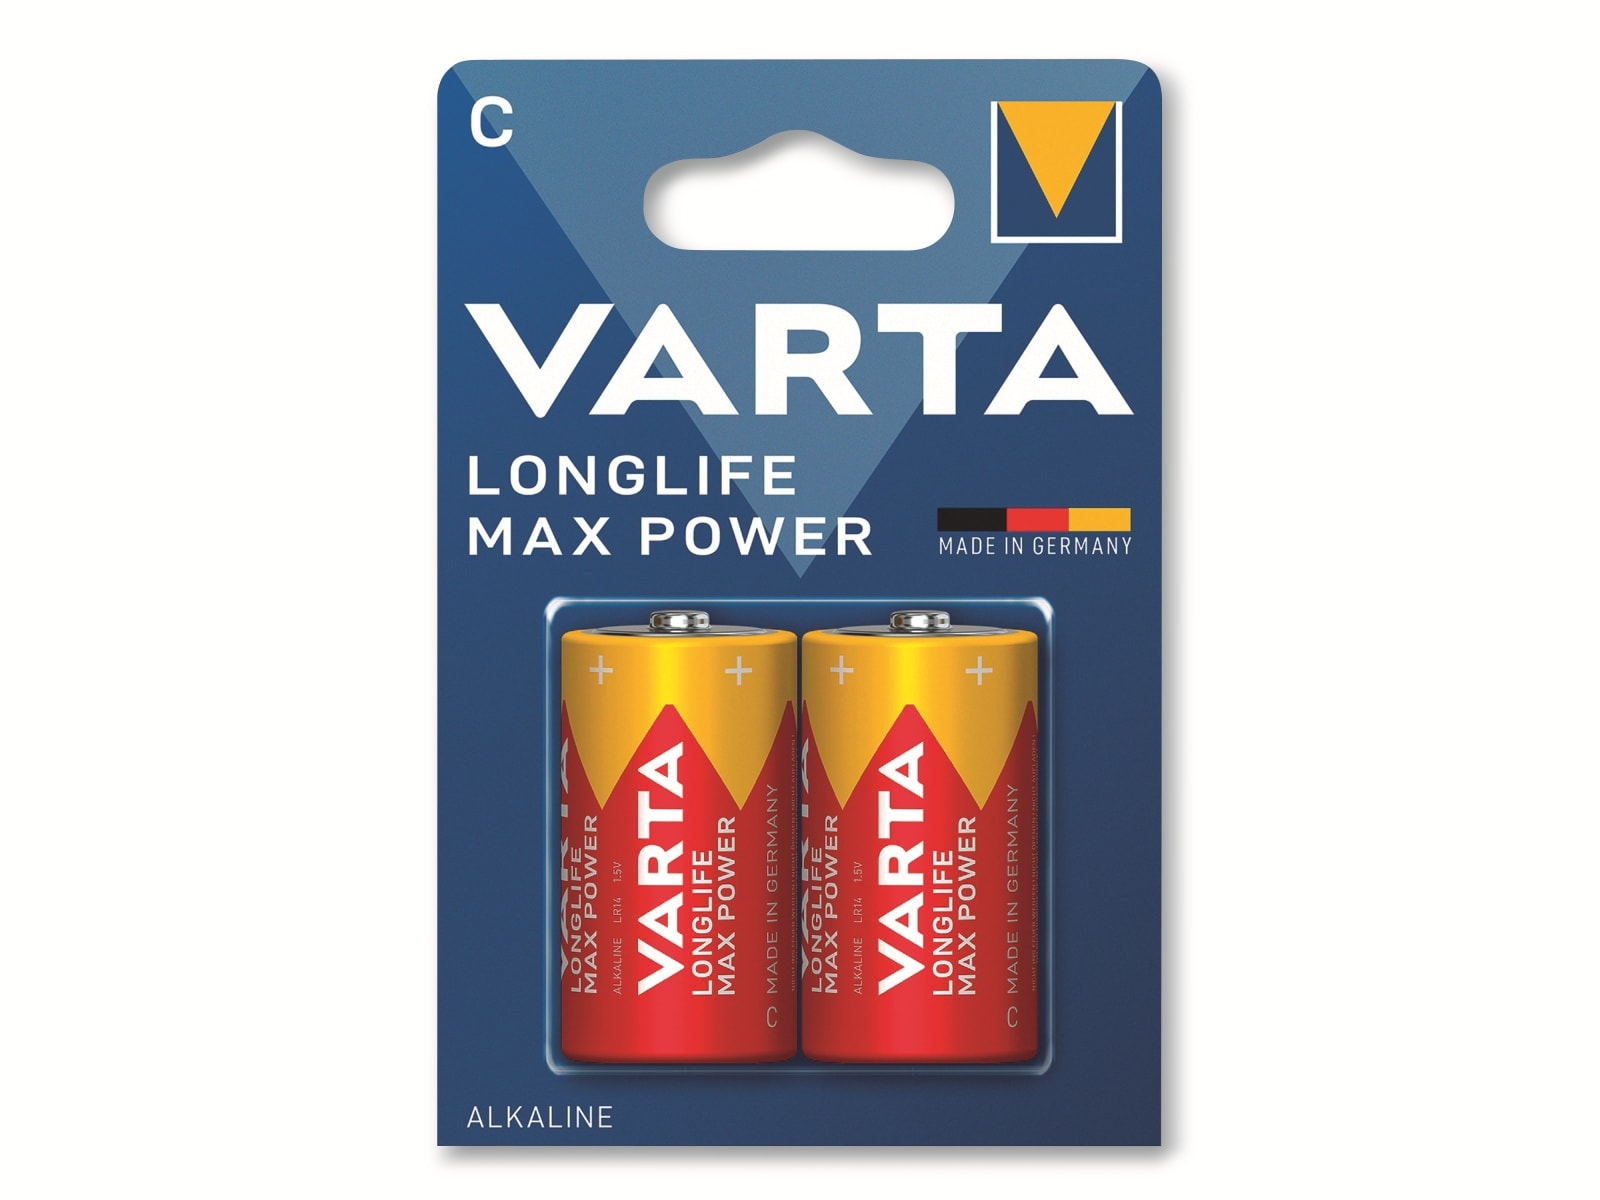 VARTA Batterie Alkaline, Baby, C, LR14, 1.5V, Longlife Max Power, 2 Stück